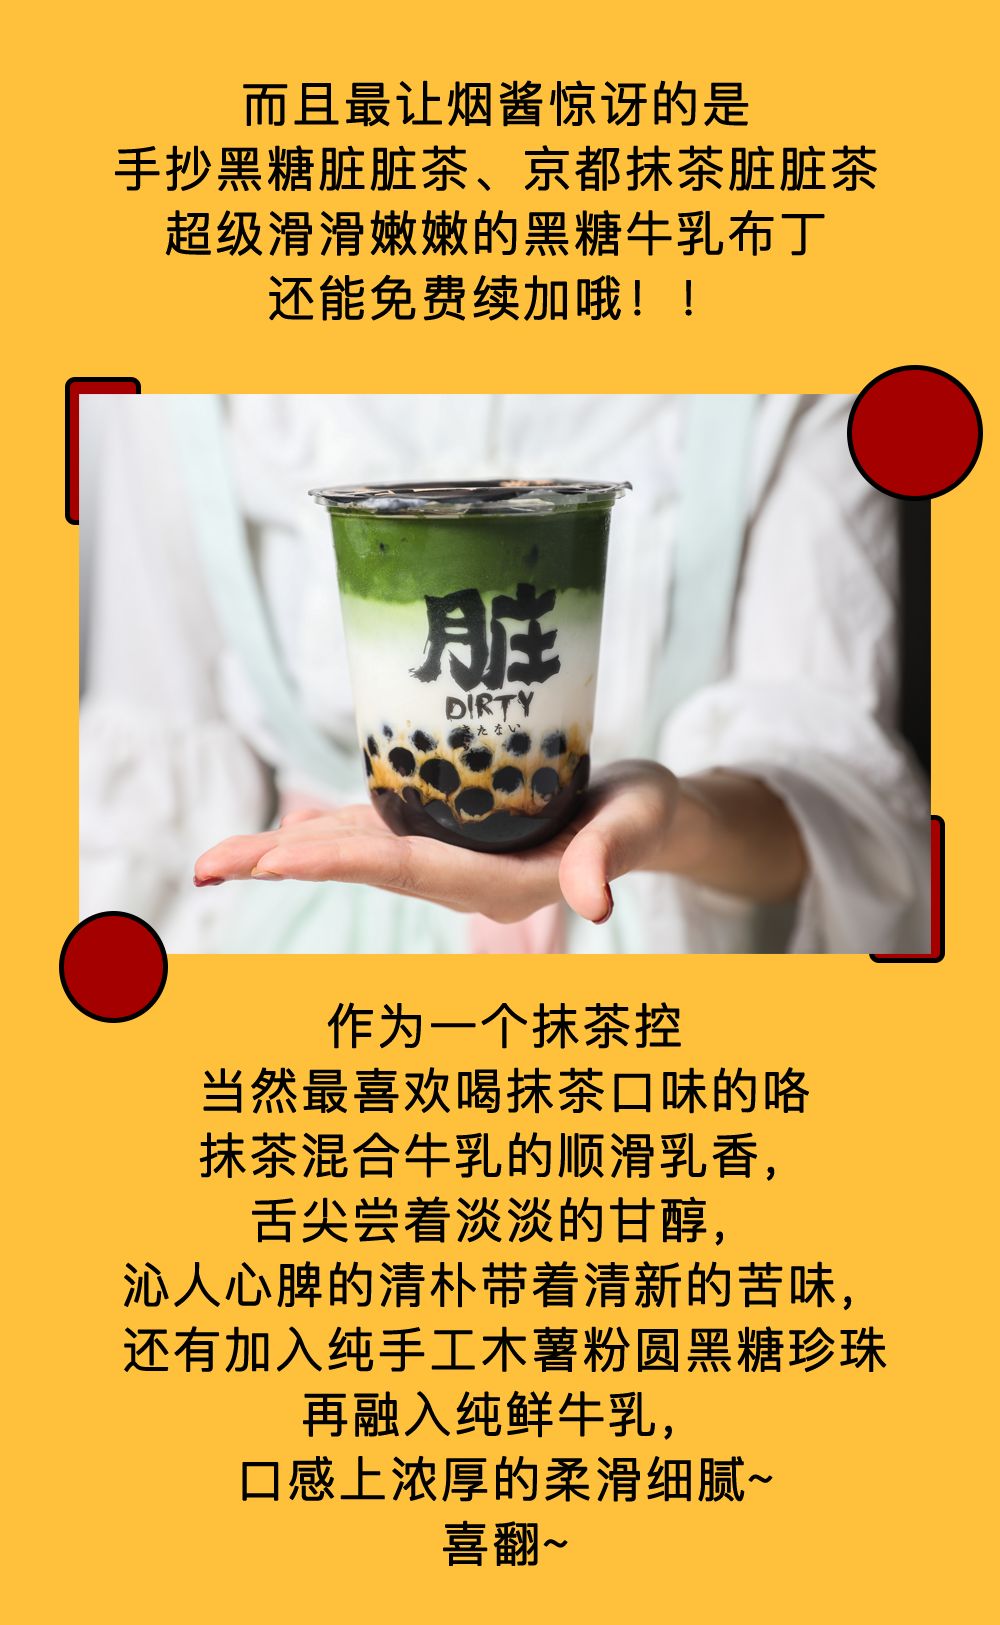 楽楽茶全球首家制茶工场登录魔都！最全新品点单攻略就在这里！